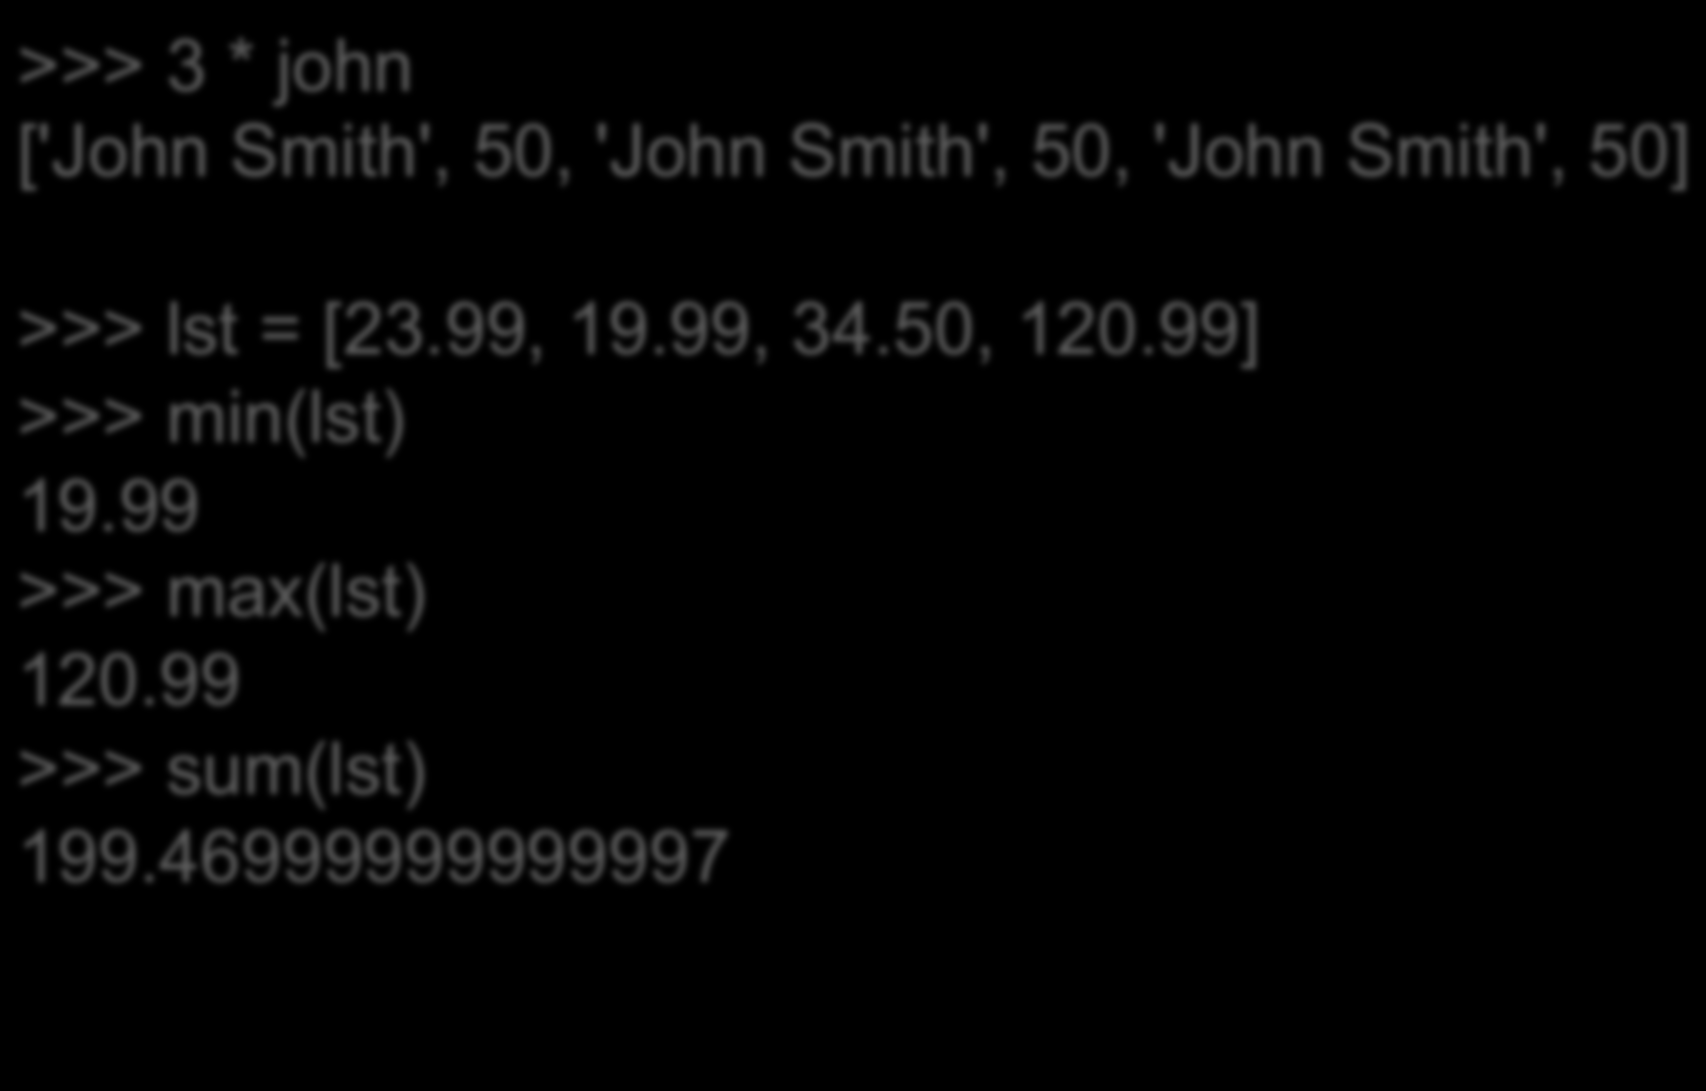 Άλλες λειτουργίες σε λίστες >>> 3 * john ['John Smith', 50, 'John Smith', 50, 'John Smith', 50] >>> lst